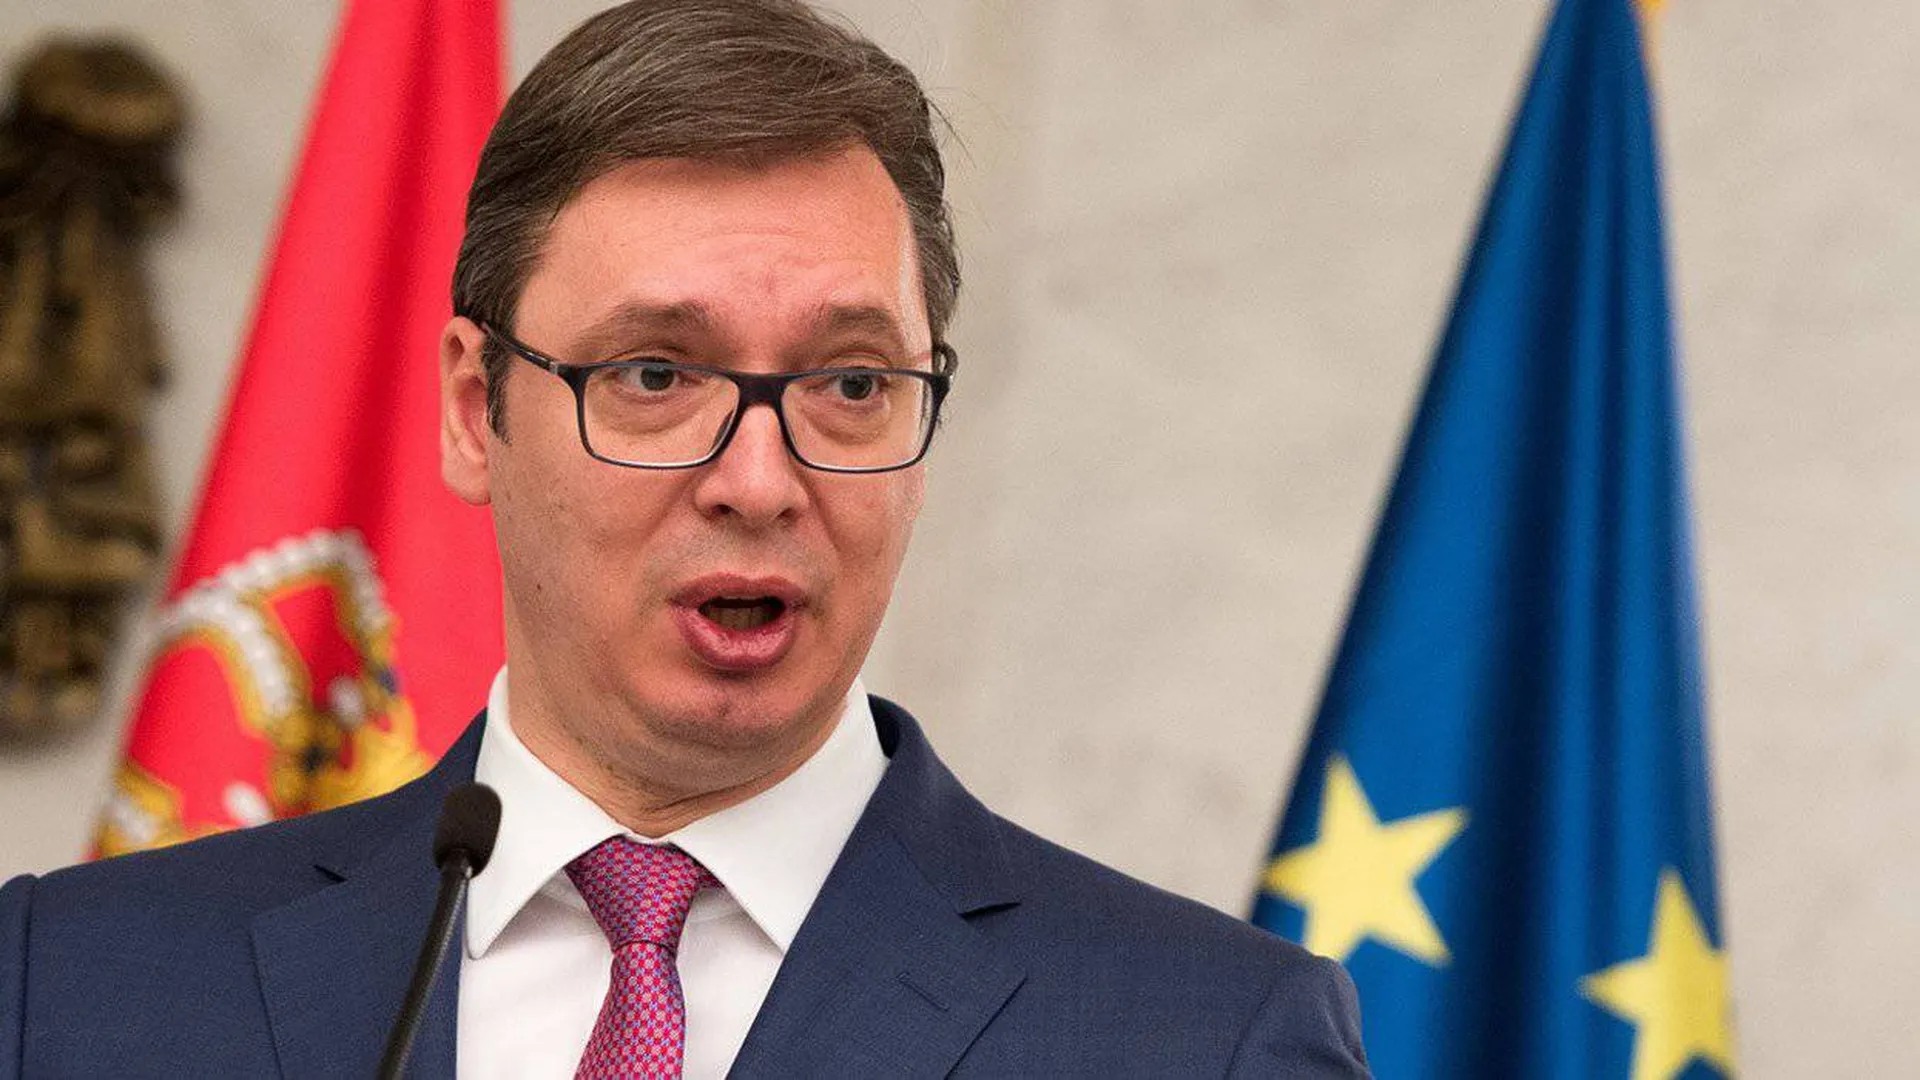 Вучич заявил, что США и Германия требуют от Сербии признания независимости Косово